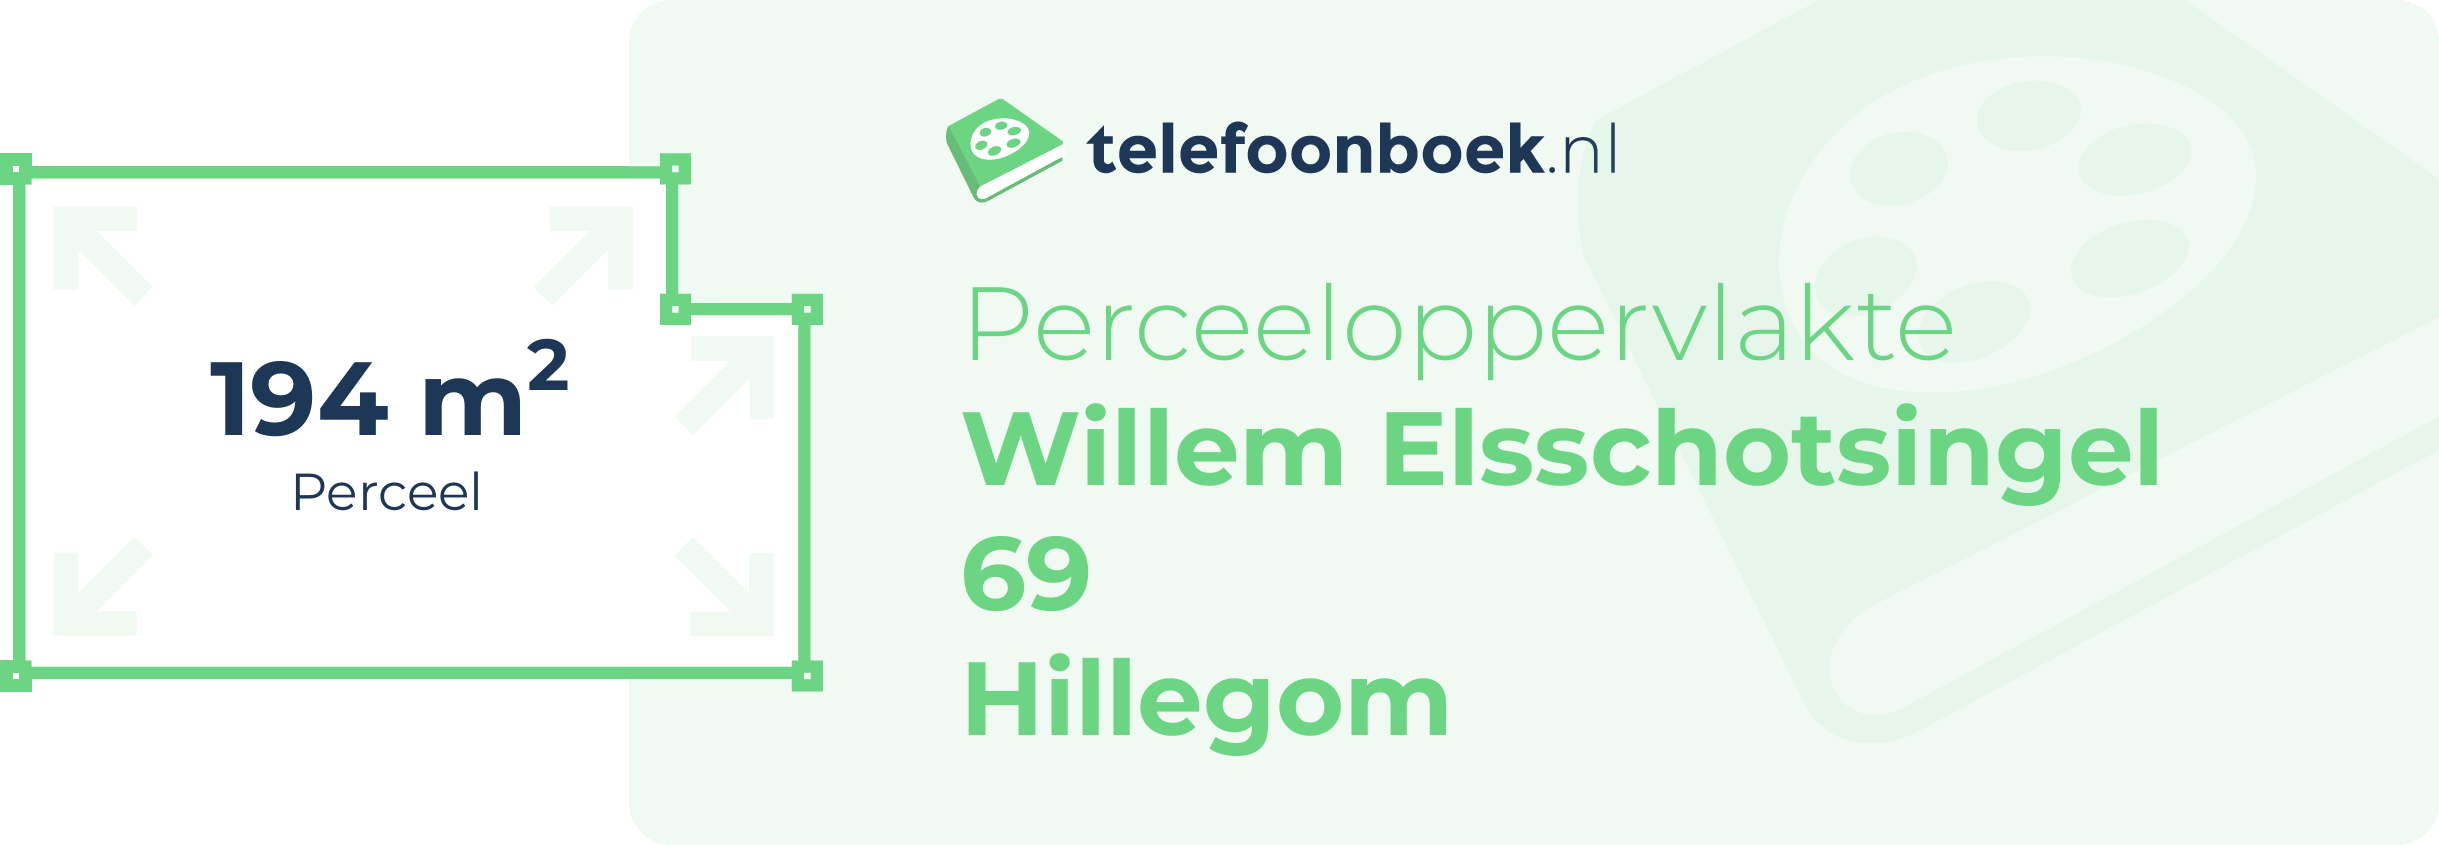 Perceeloppervlakte Willem Elsschotsingel 69 Hillegom